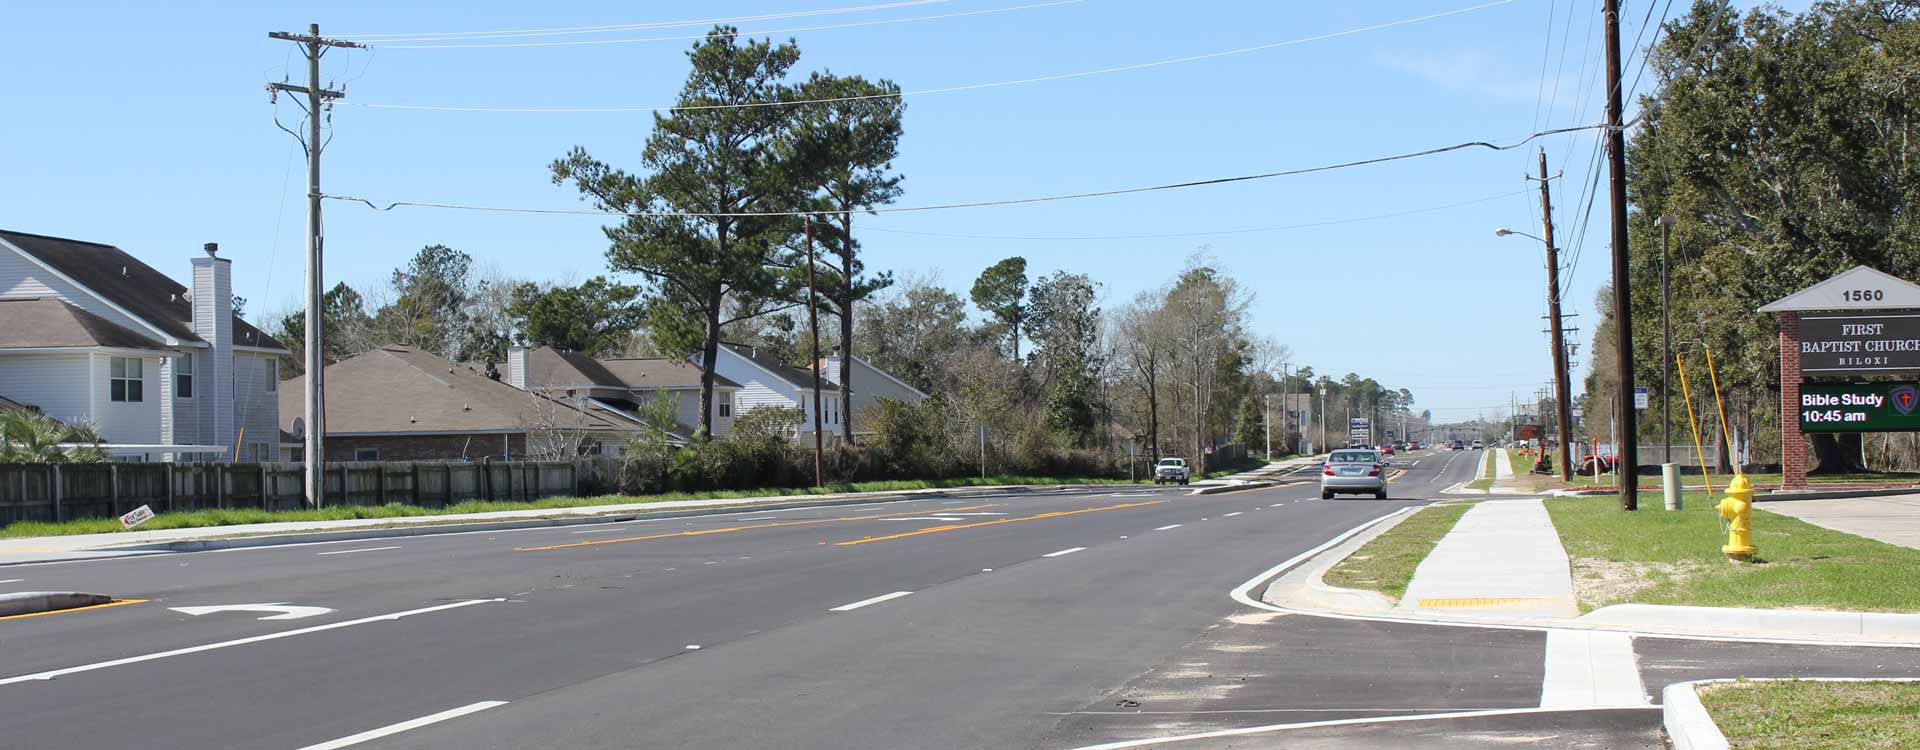 D'Iberville Sidewalk and Pedestrian Study - City of D'Iberville, Mississippi